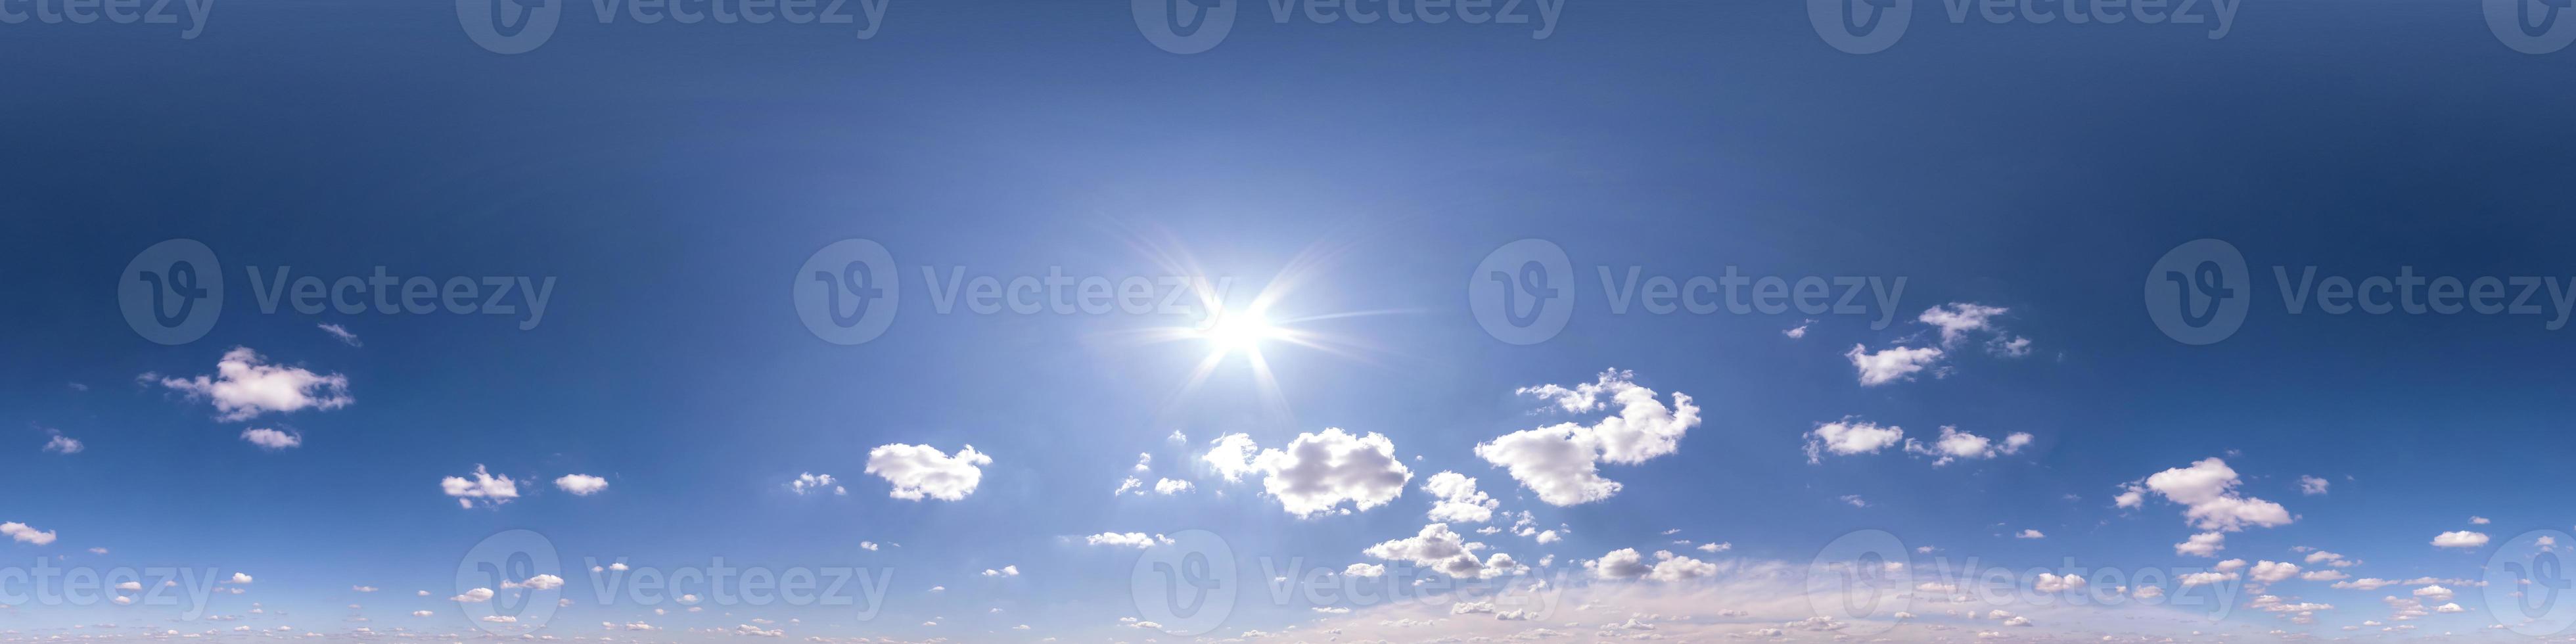 cielo azul claro con nubes blancas sin suelo. vista de ángulo de 360 grados panorámica hdri perfecta para usar en gráficos 3d o desarrollo de juegos como cúpula del cielo o editar toma de drones foto